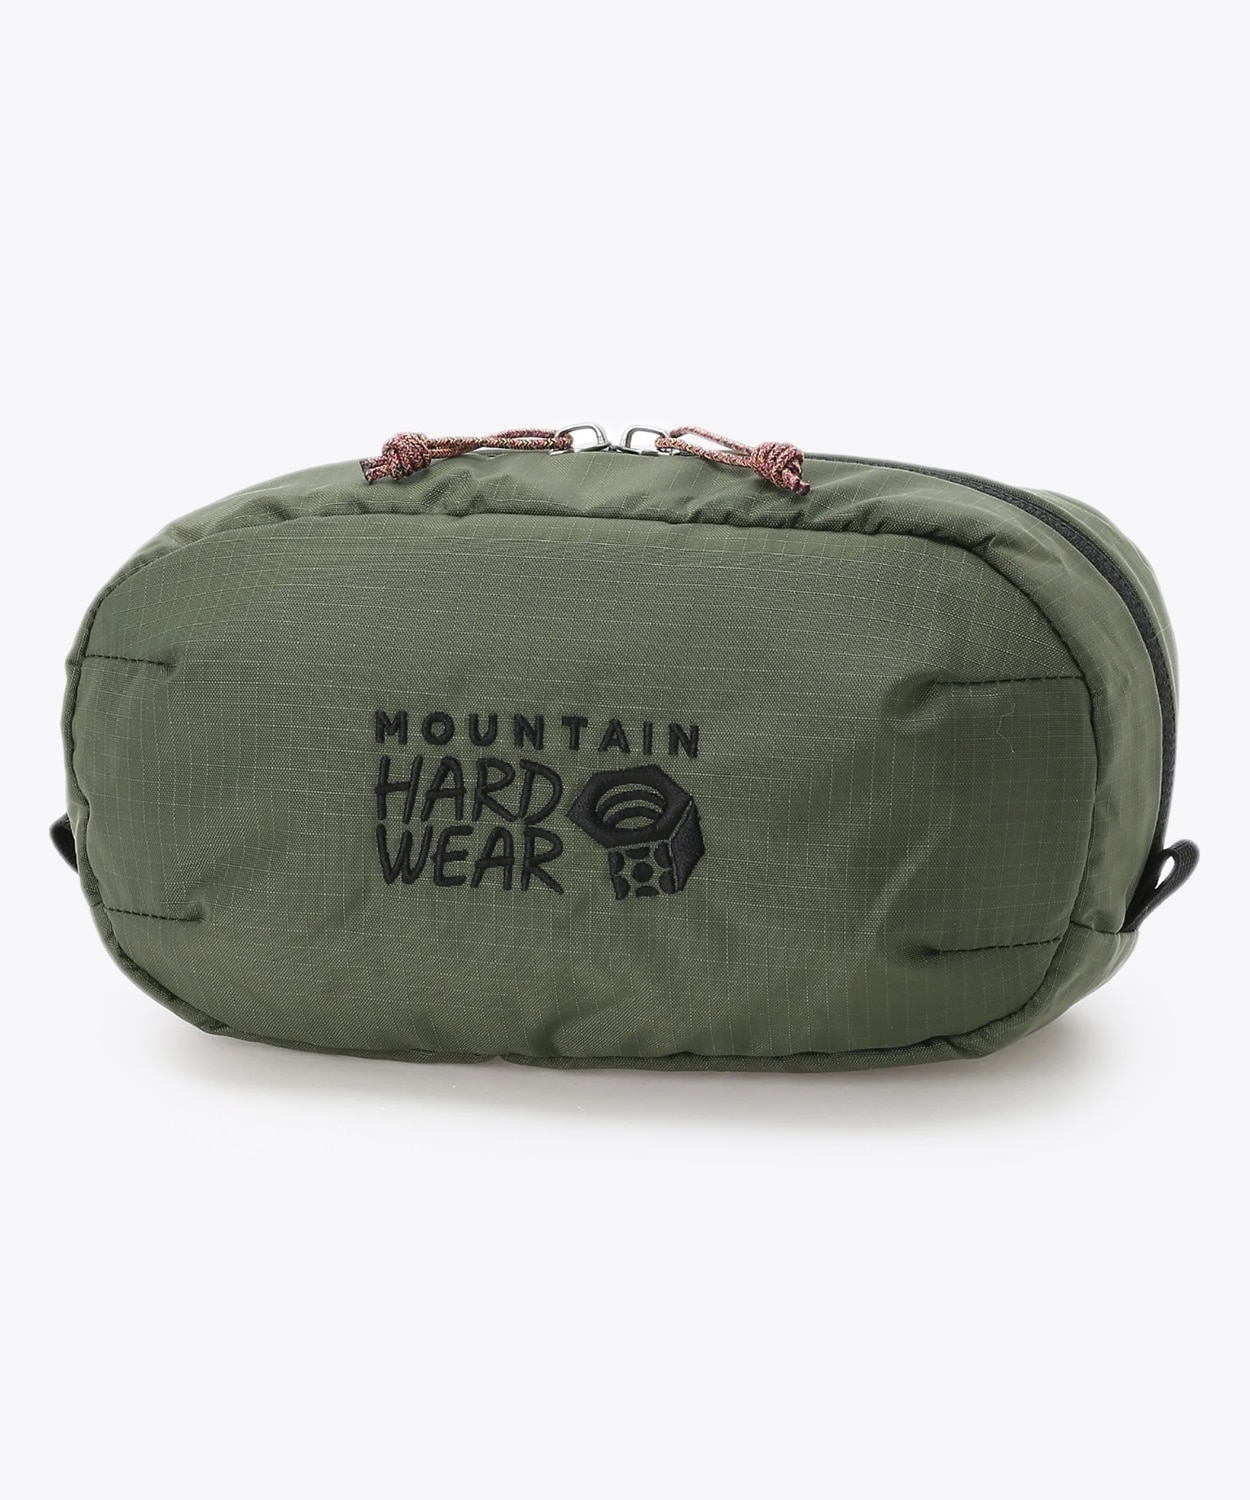 マウンテンハードウェア(Mountain Hardwear)公式サイト│登山ウェア＆ギアブランドフィールドデイヒップパック(O/S Surplus  Green)登山、クライミングのアウトドアウェア、アウトドアギアのマウンテンハードウェア(Mountain Hardwear)公式通販サイト